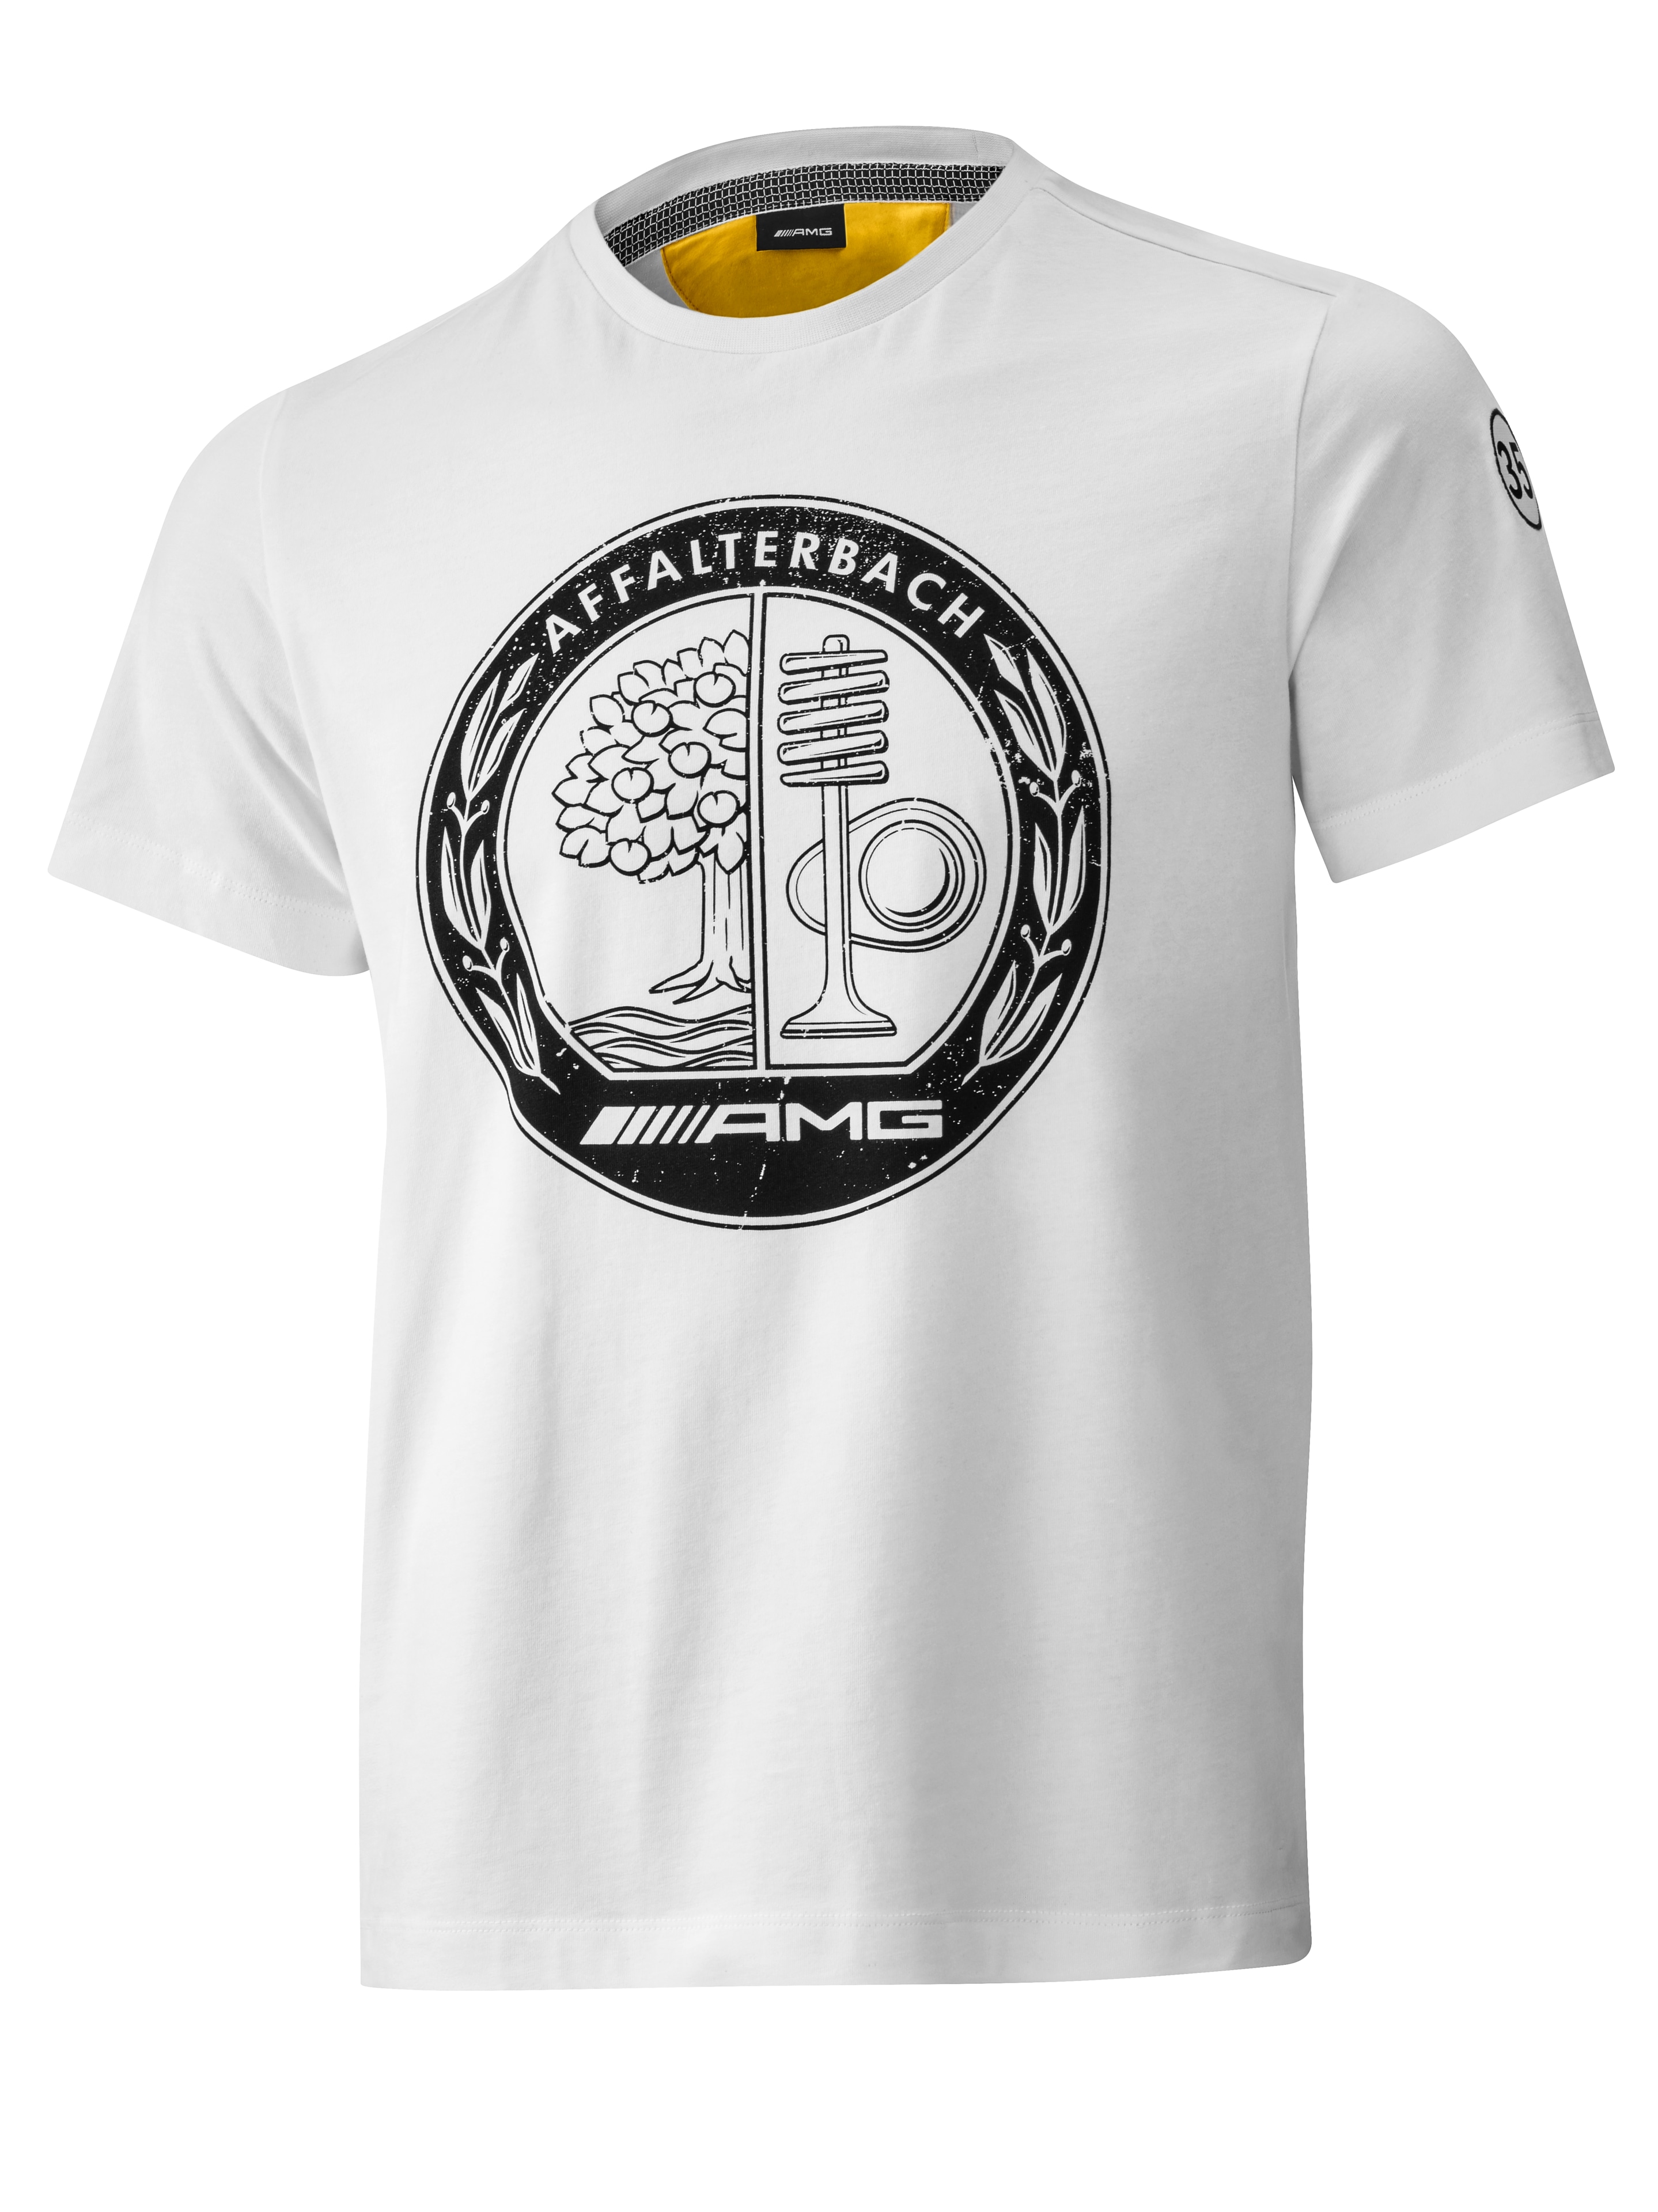 AMG T-Shirt Herren - weiß / gelb, XS